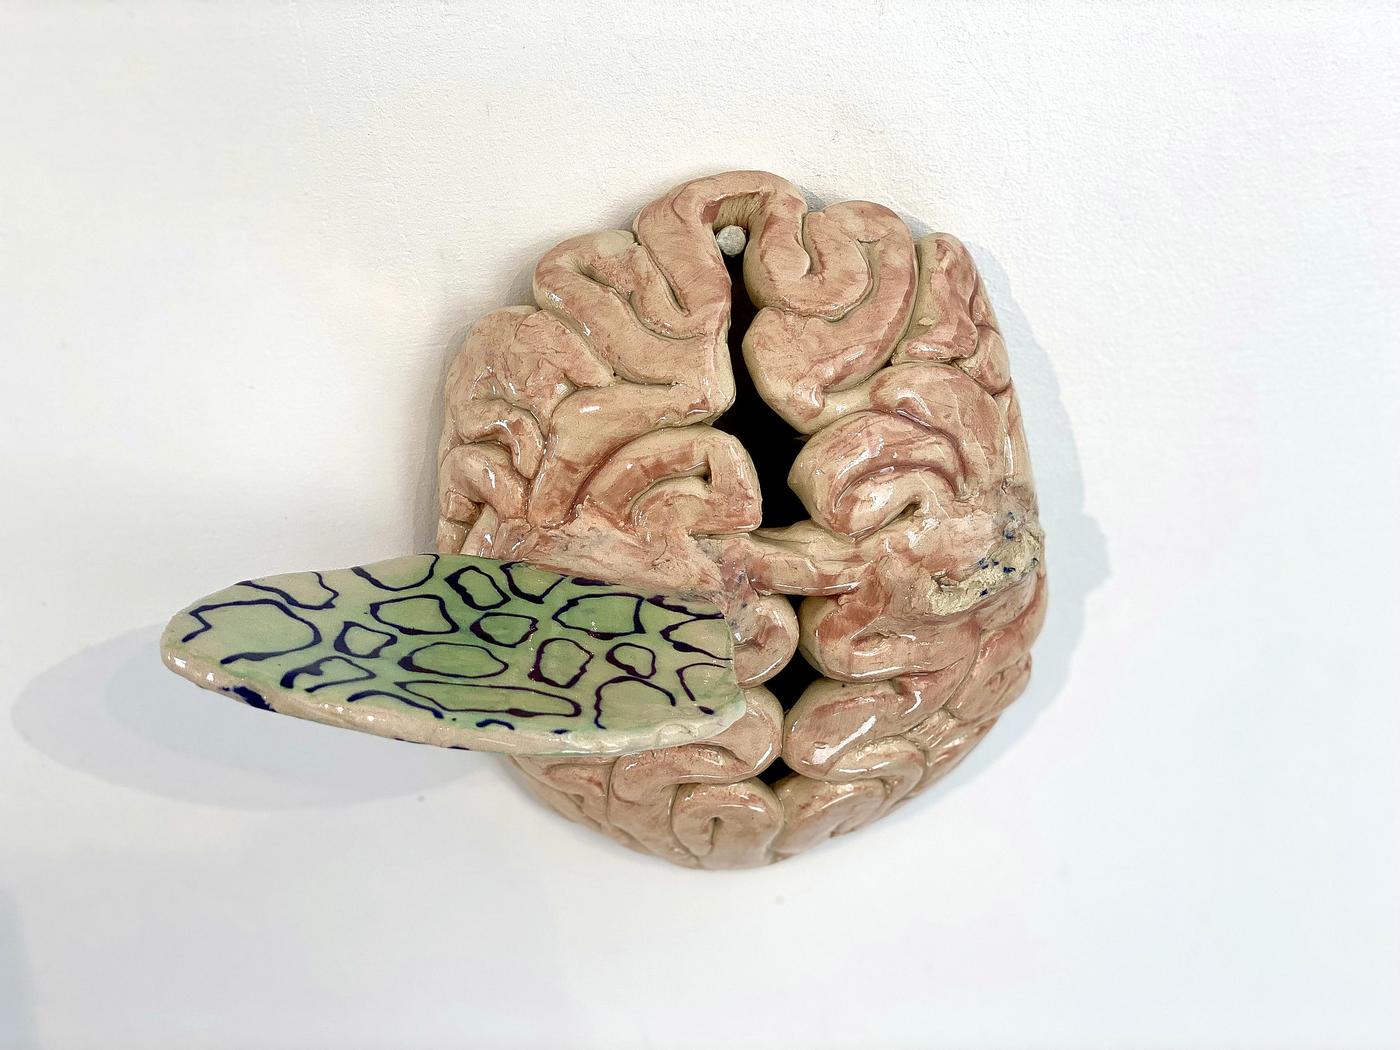 Keramikskulptur föreställande en hjärna